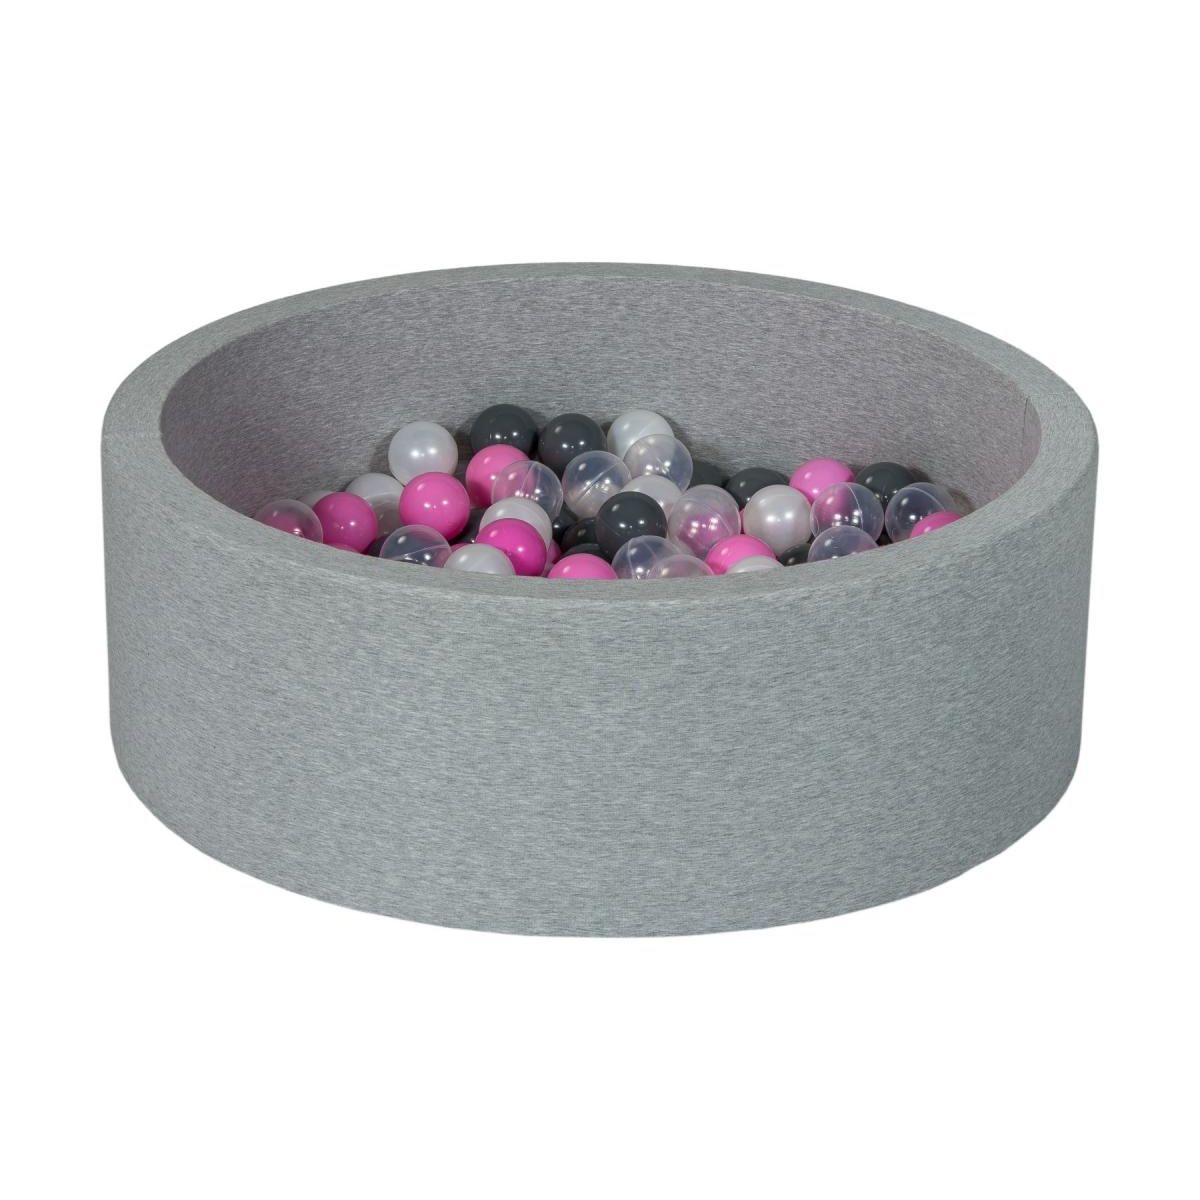  Piscine à balles perle, transparent, rose clair, gris - 200 balles